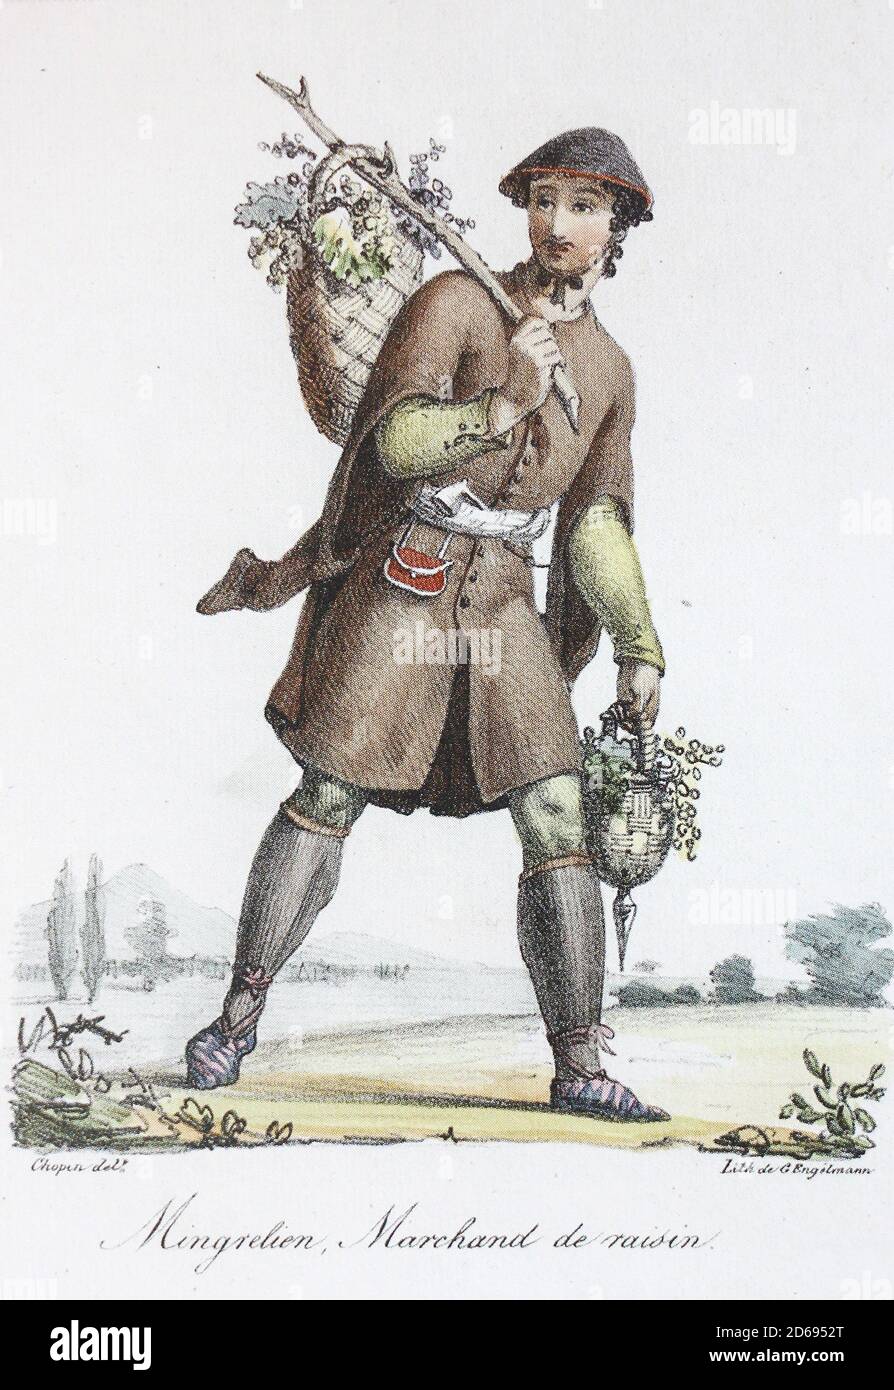 Mingrelets, un marchand de raisin. Lithographie des années 1820. Banque D'Images